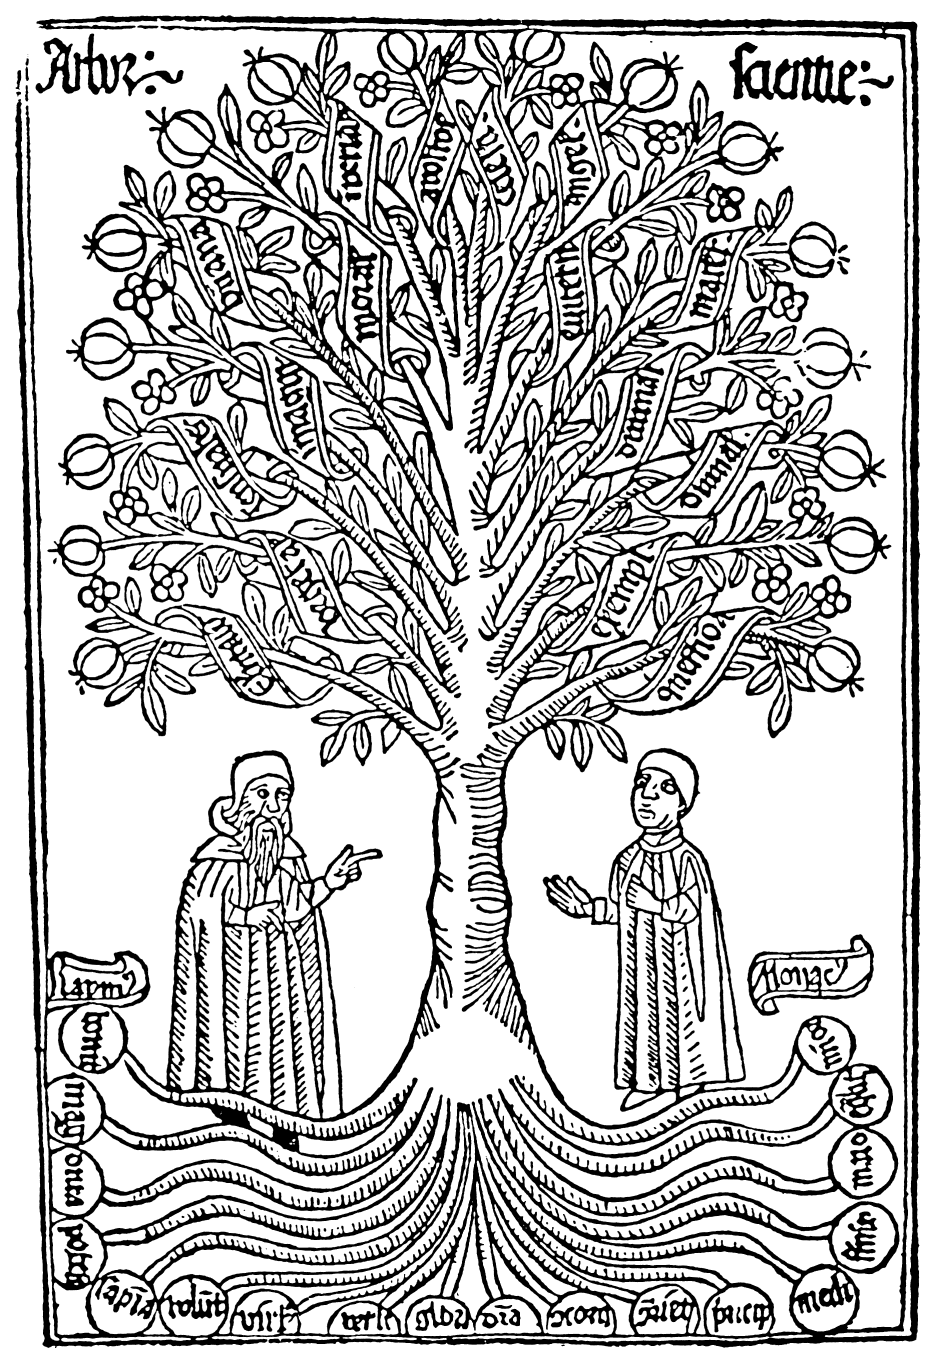 Arbor Scientiae, late thirteenth century. [via]